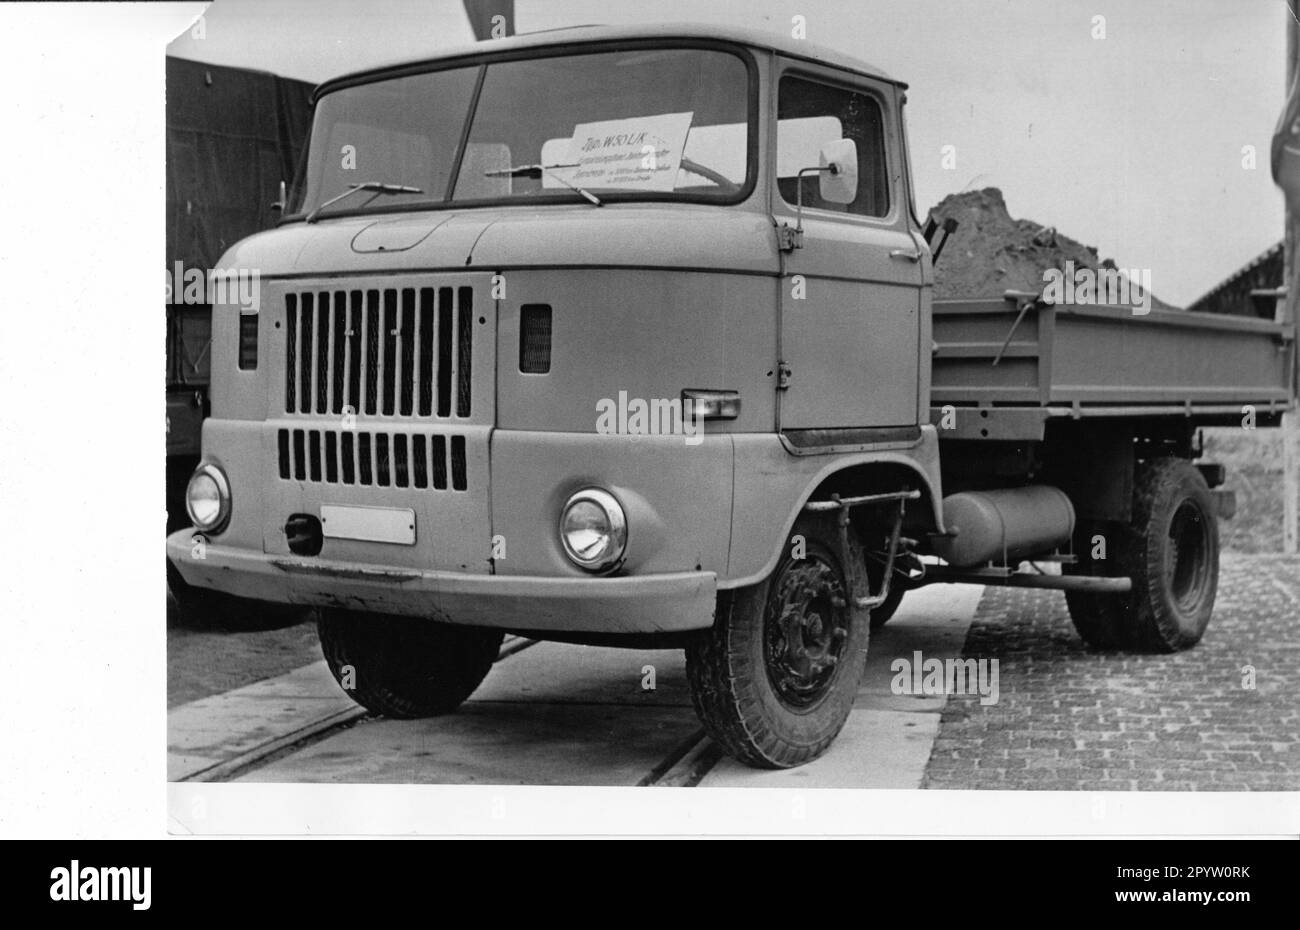 Le chariot W 50 L/K.fabriqué dans l'usine automobile Ludwigsfelde.vehicles.GDR-OPERATIONS. Photo: MAZ/Leon Schmidtke, fin 60s, début 70s. [traduction automatique] Banque D'Images